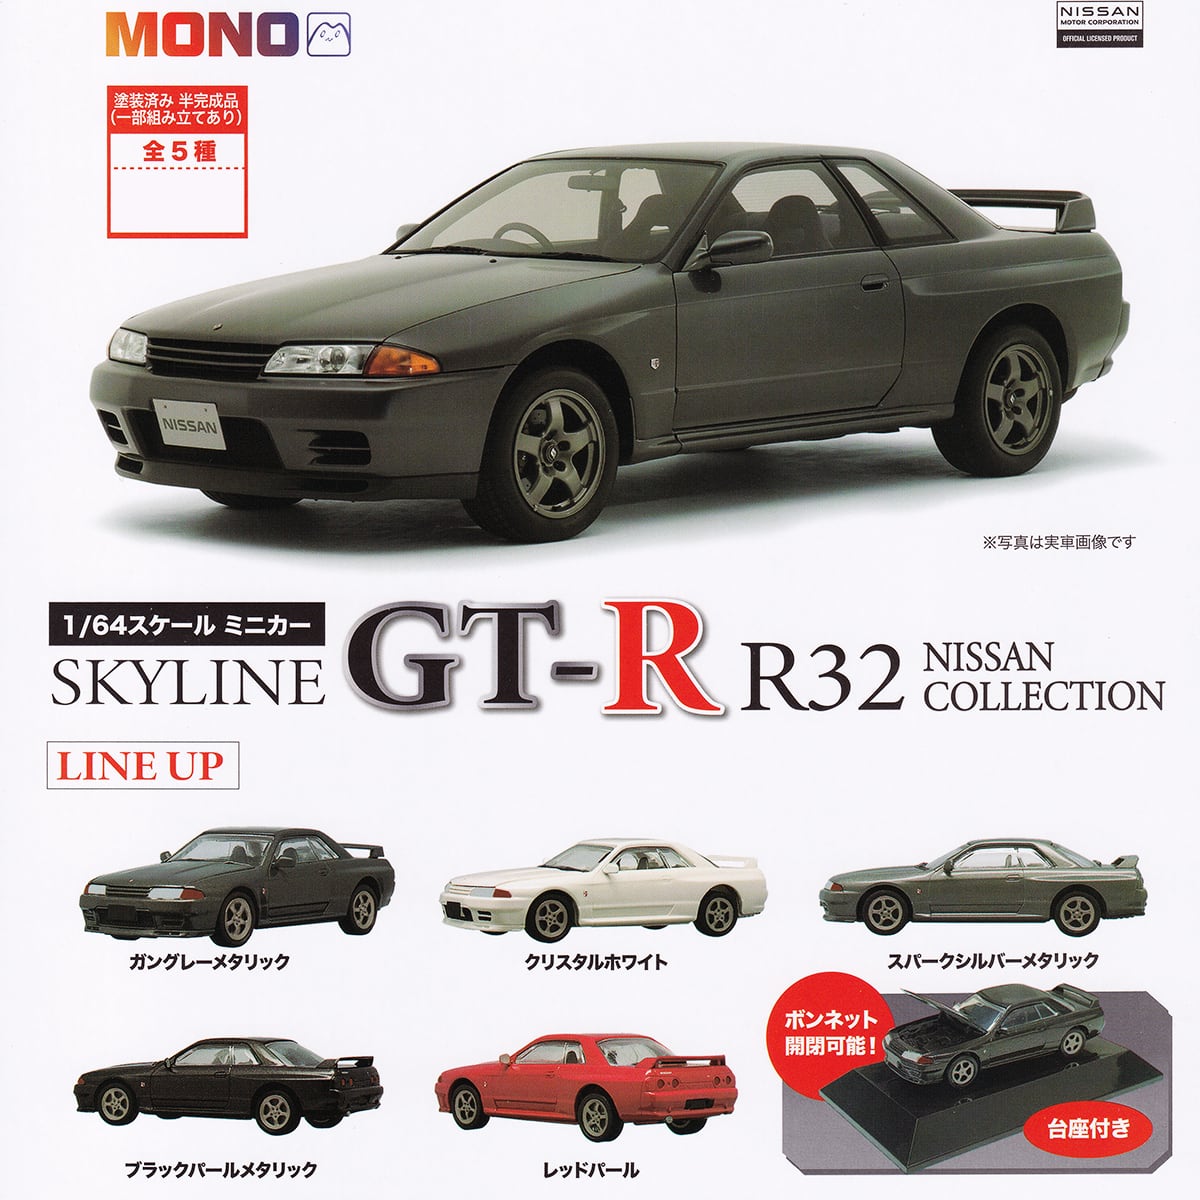 1/64スケール ミニカー SKYLINE GT-R R32 NISSAN COLLECTION MONO